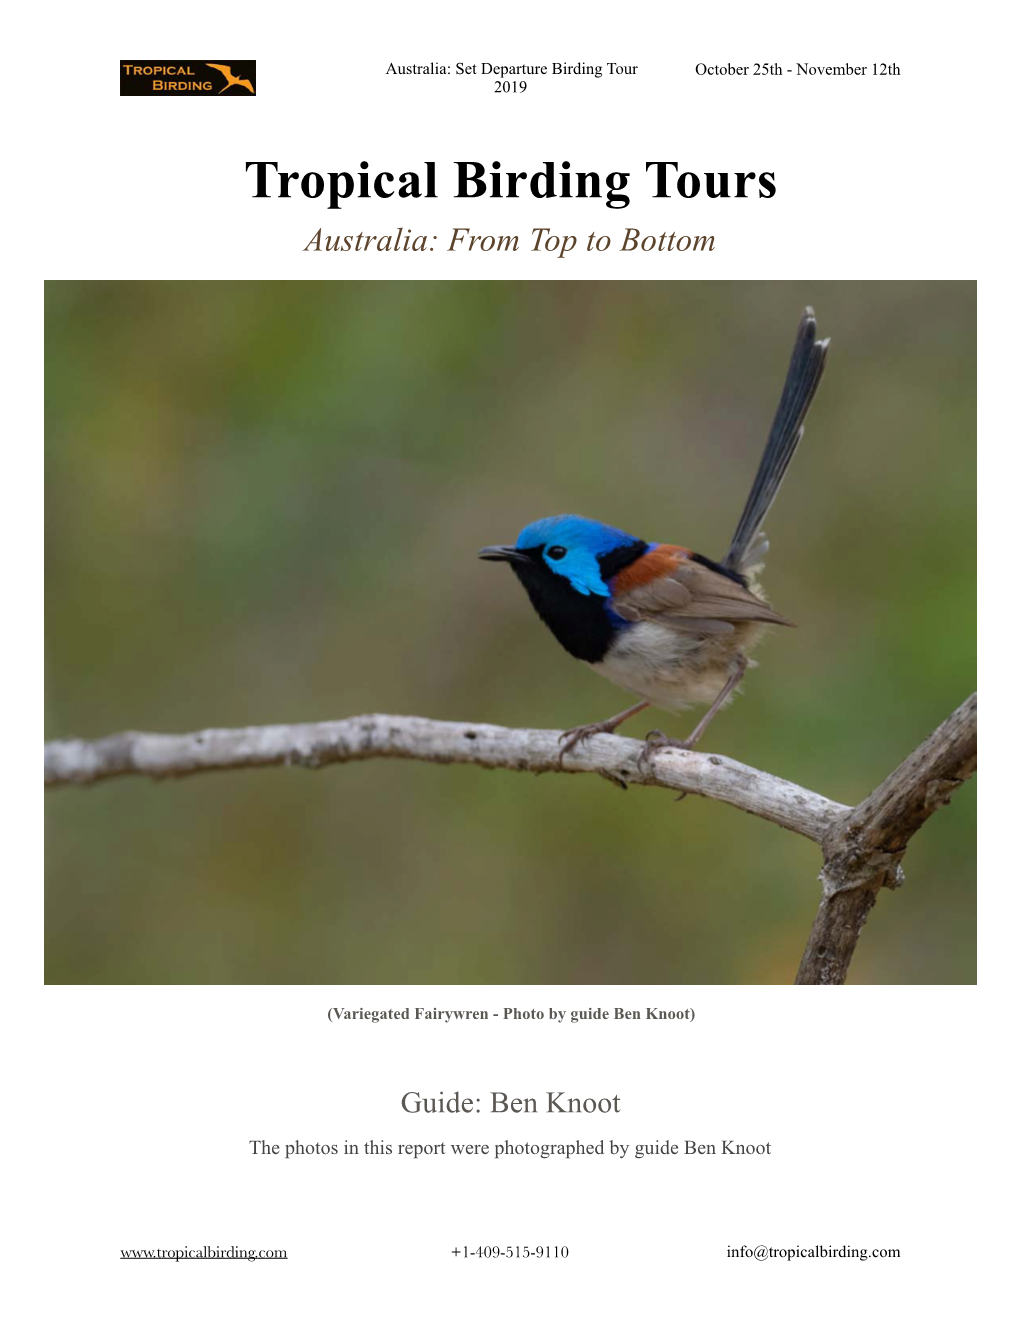 Trip Report Australia Birding Tour 2019